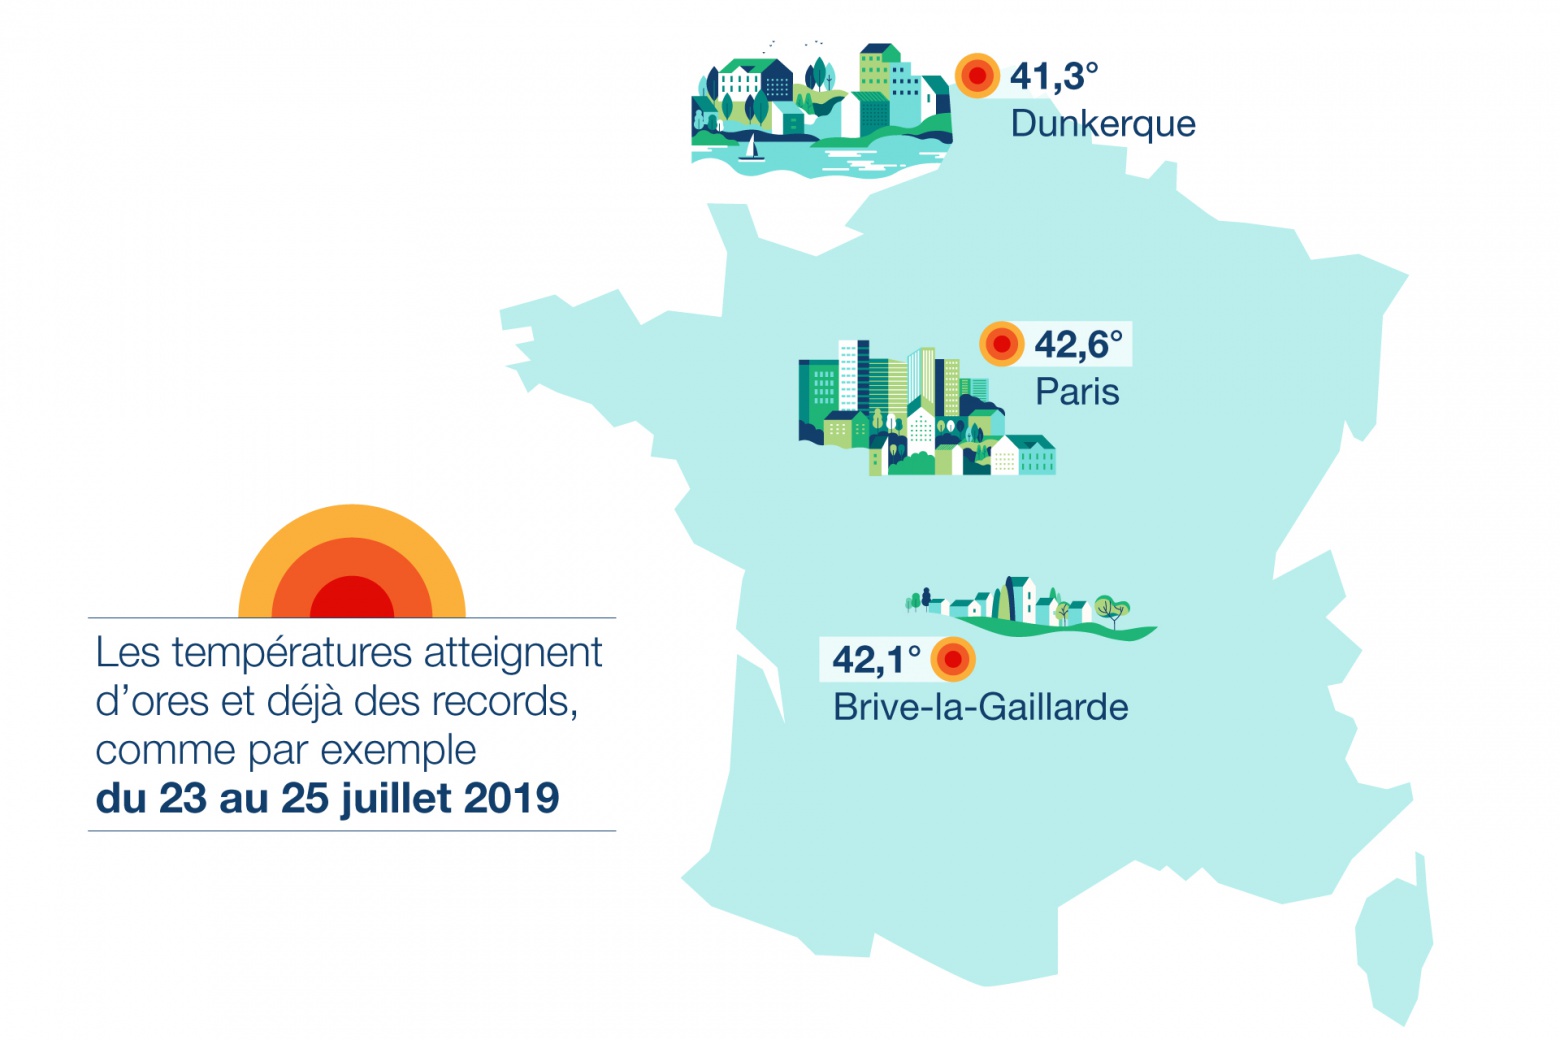 Les températures atteignent d’ores et déjà des records, comme par exemple du 23 au 25 juillet 2019 : 42,6° à Paris, 41,3° à Dunkerque, 42,1° à Brive-la-Gaillarde.